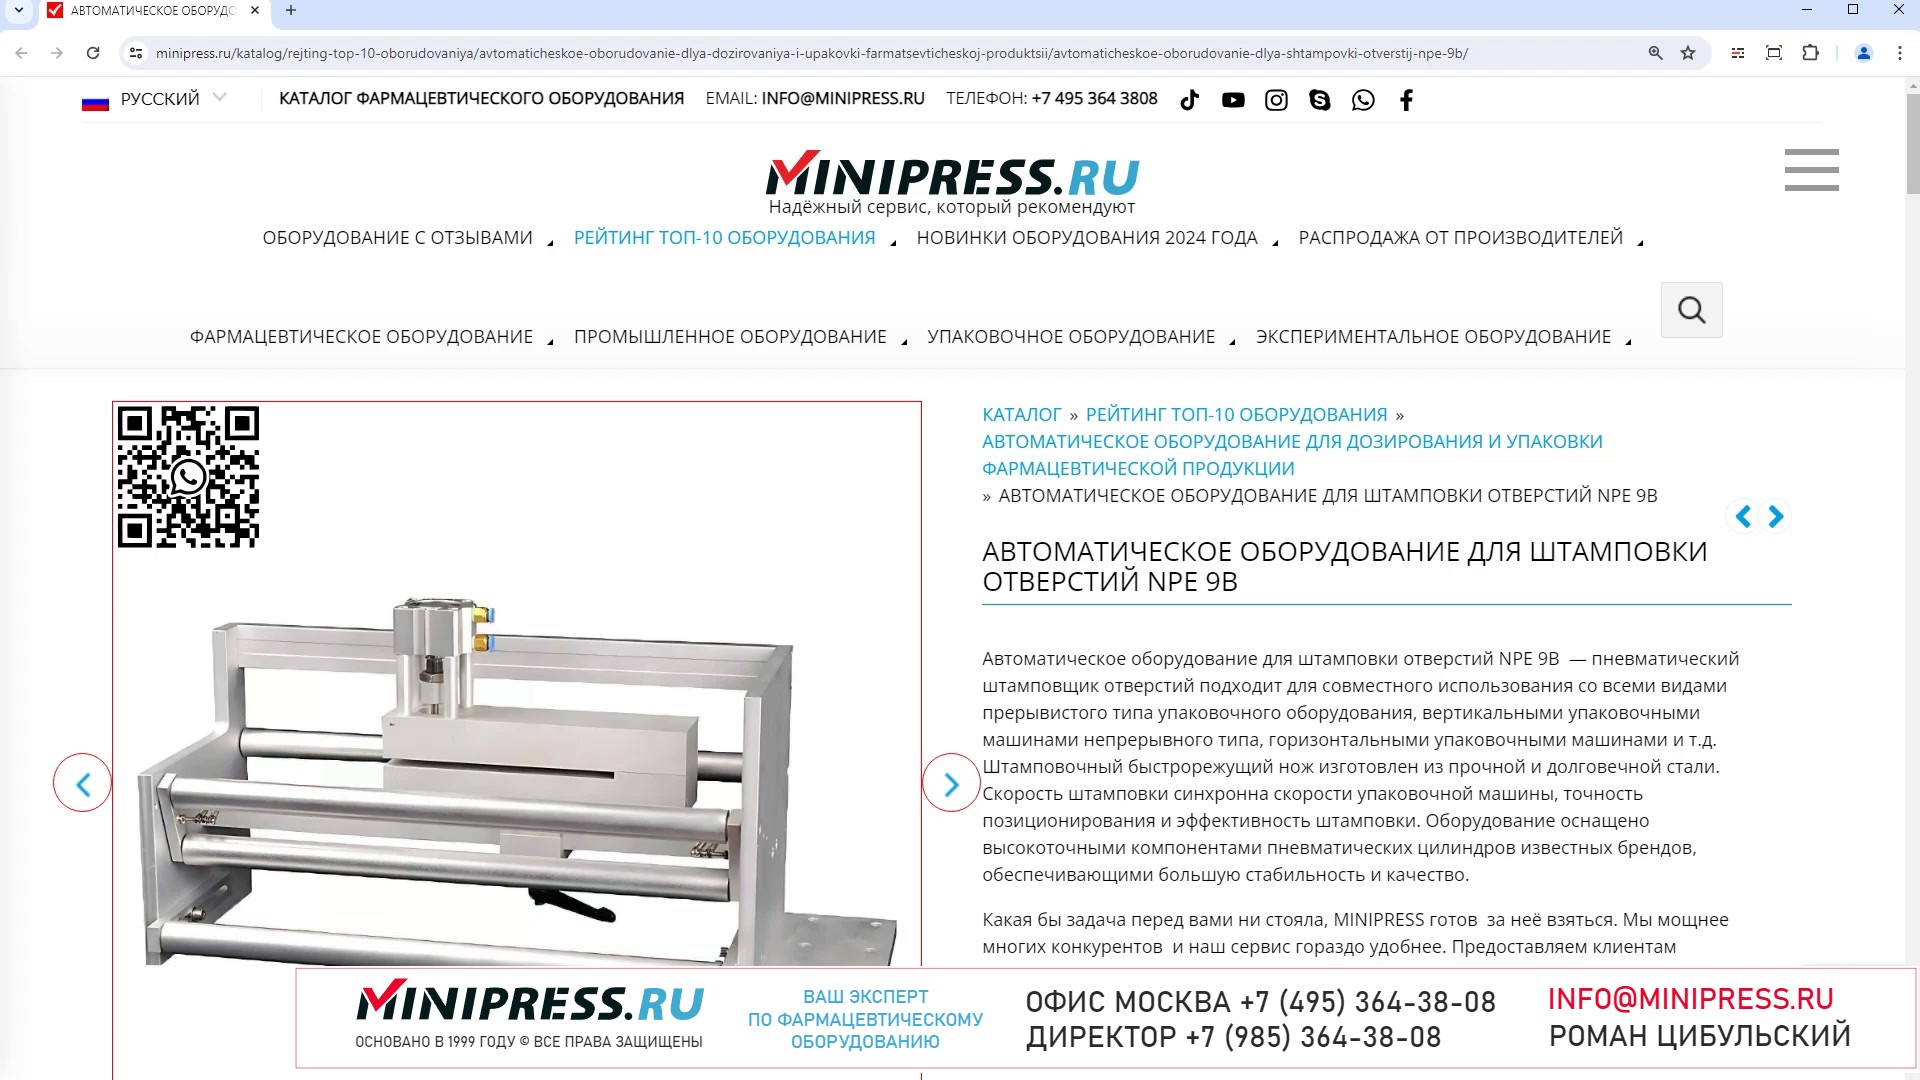 Minipress.ru Автоматическое оборудование для штамповки отверстий NPE 9B